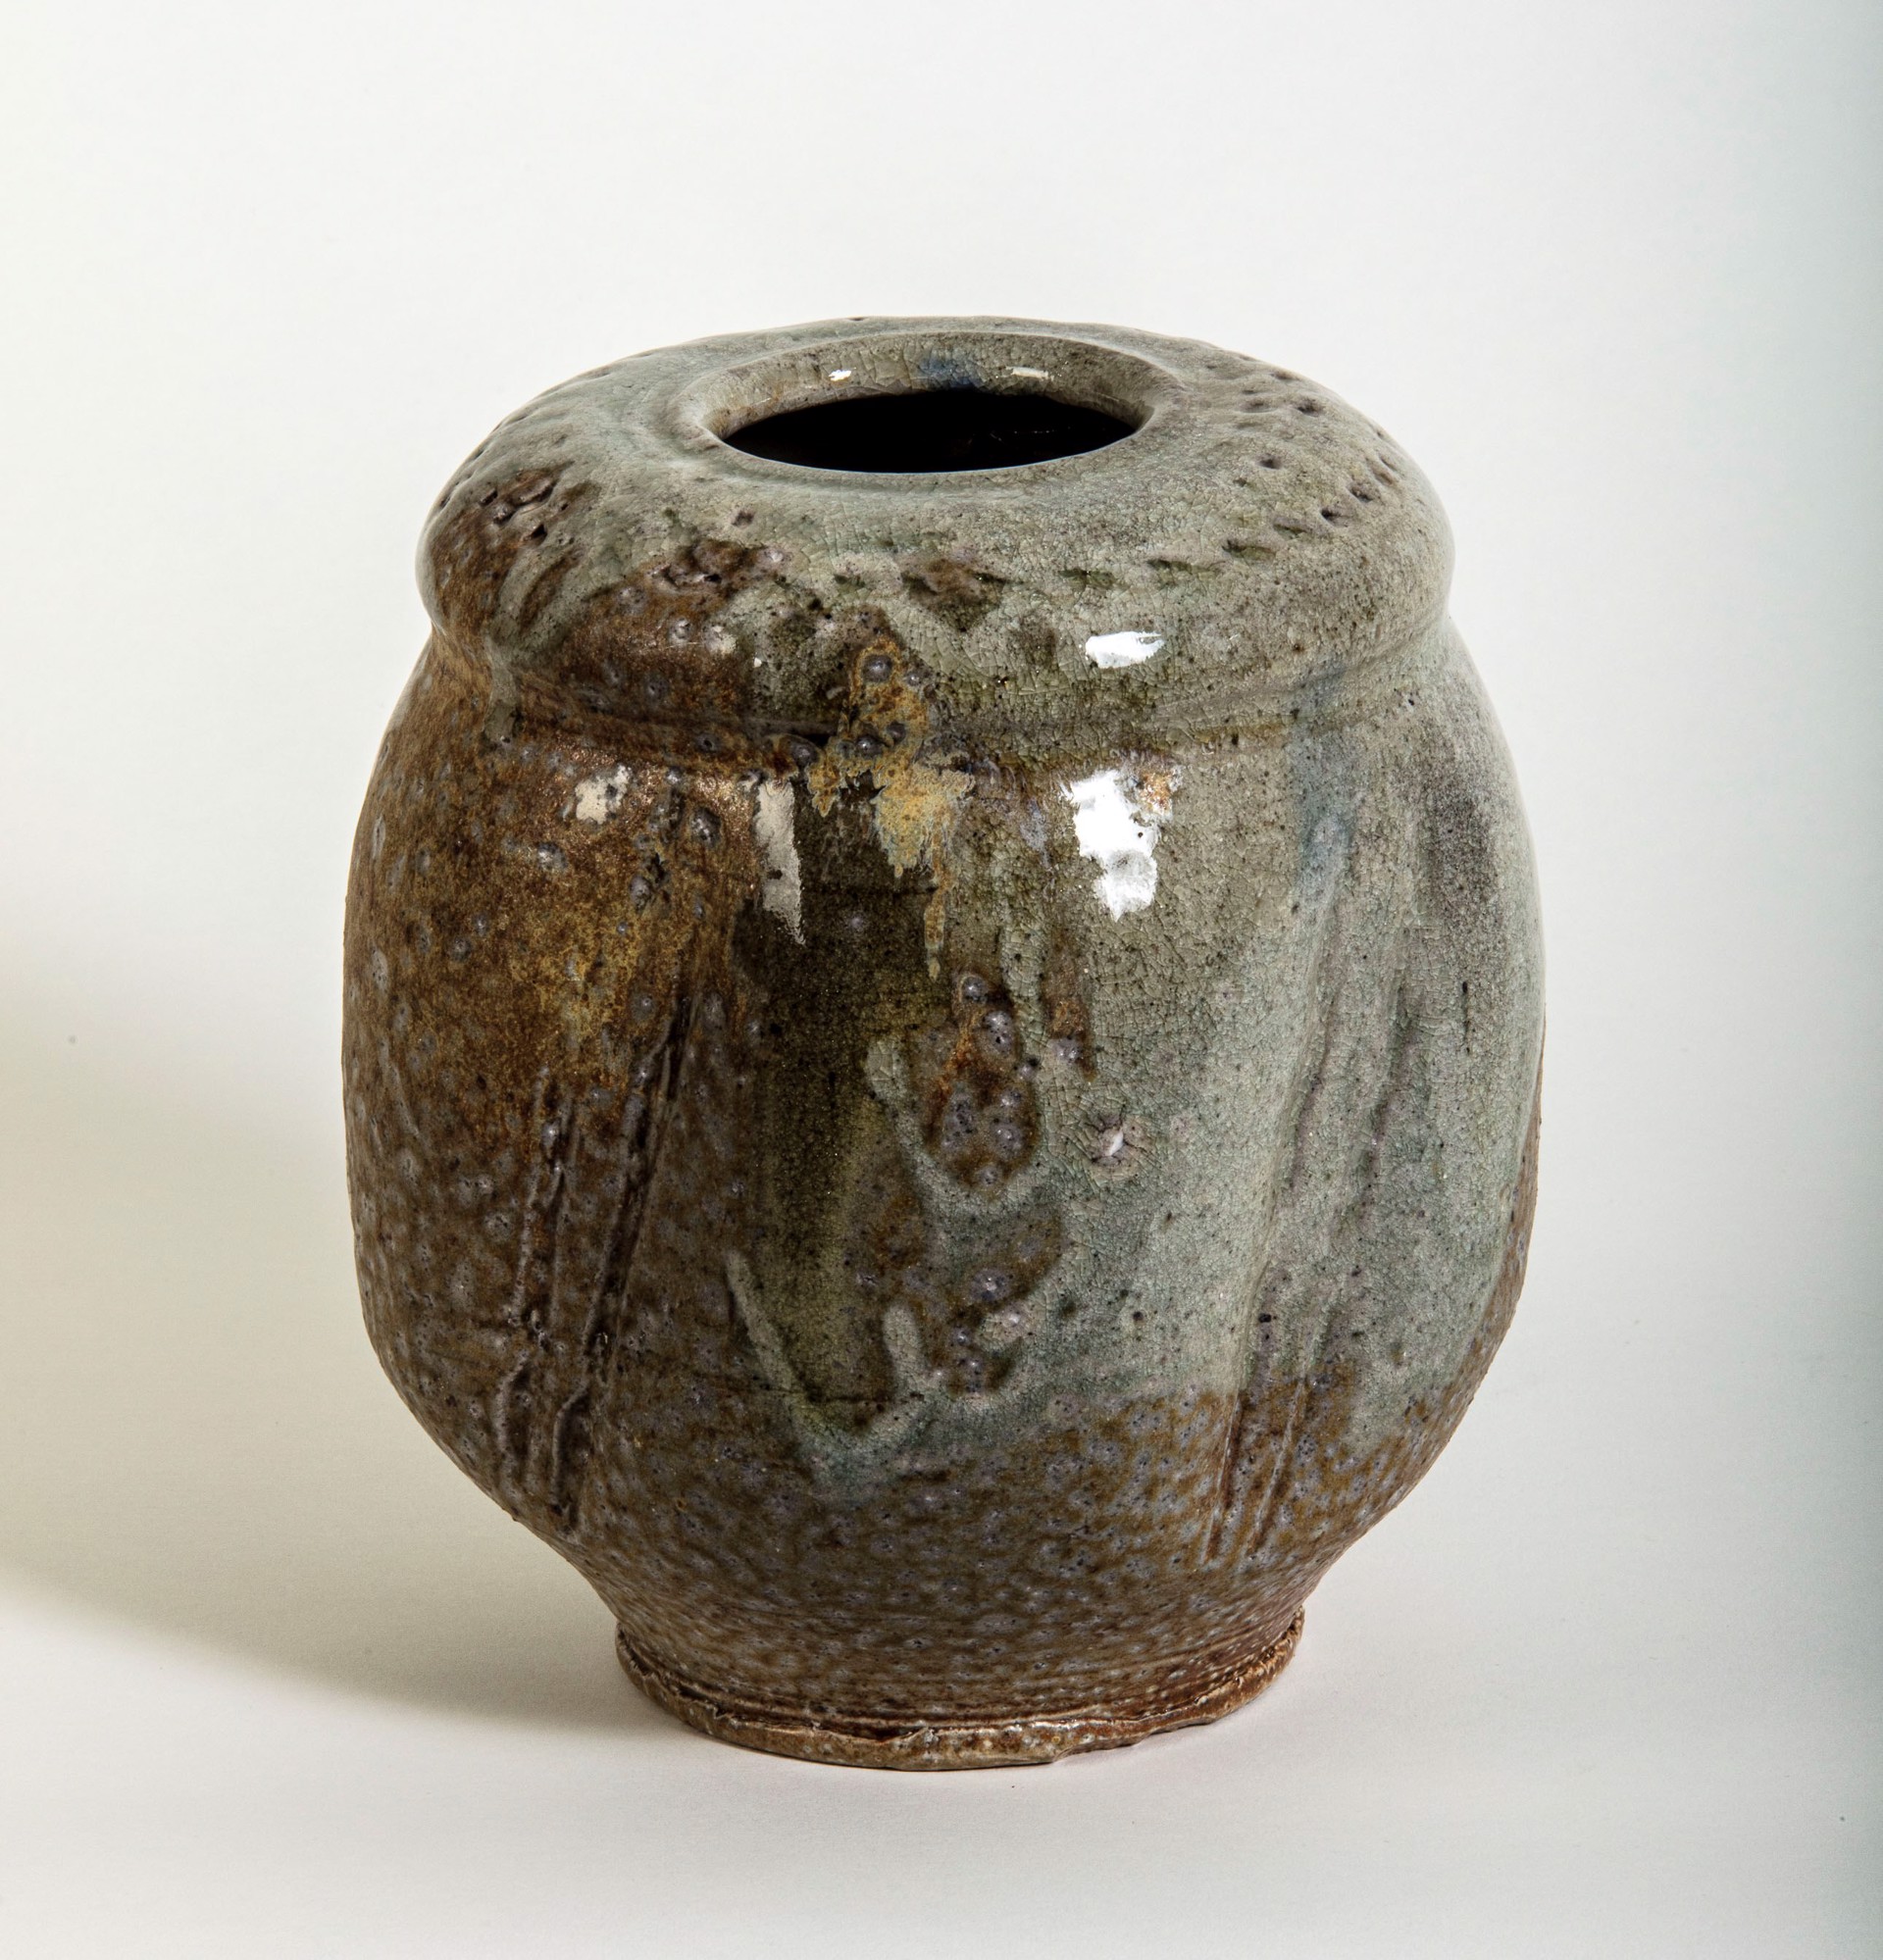 Vase by Don Reitz